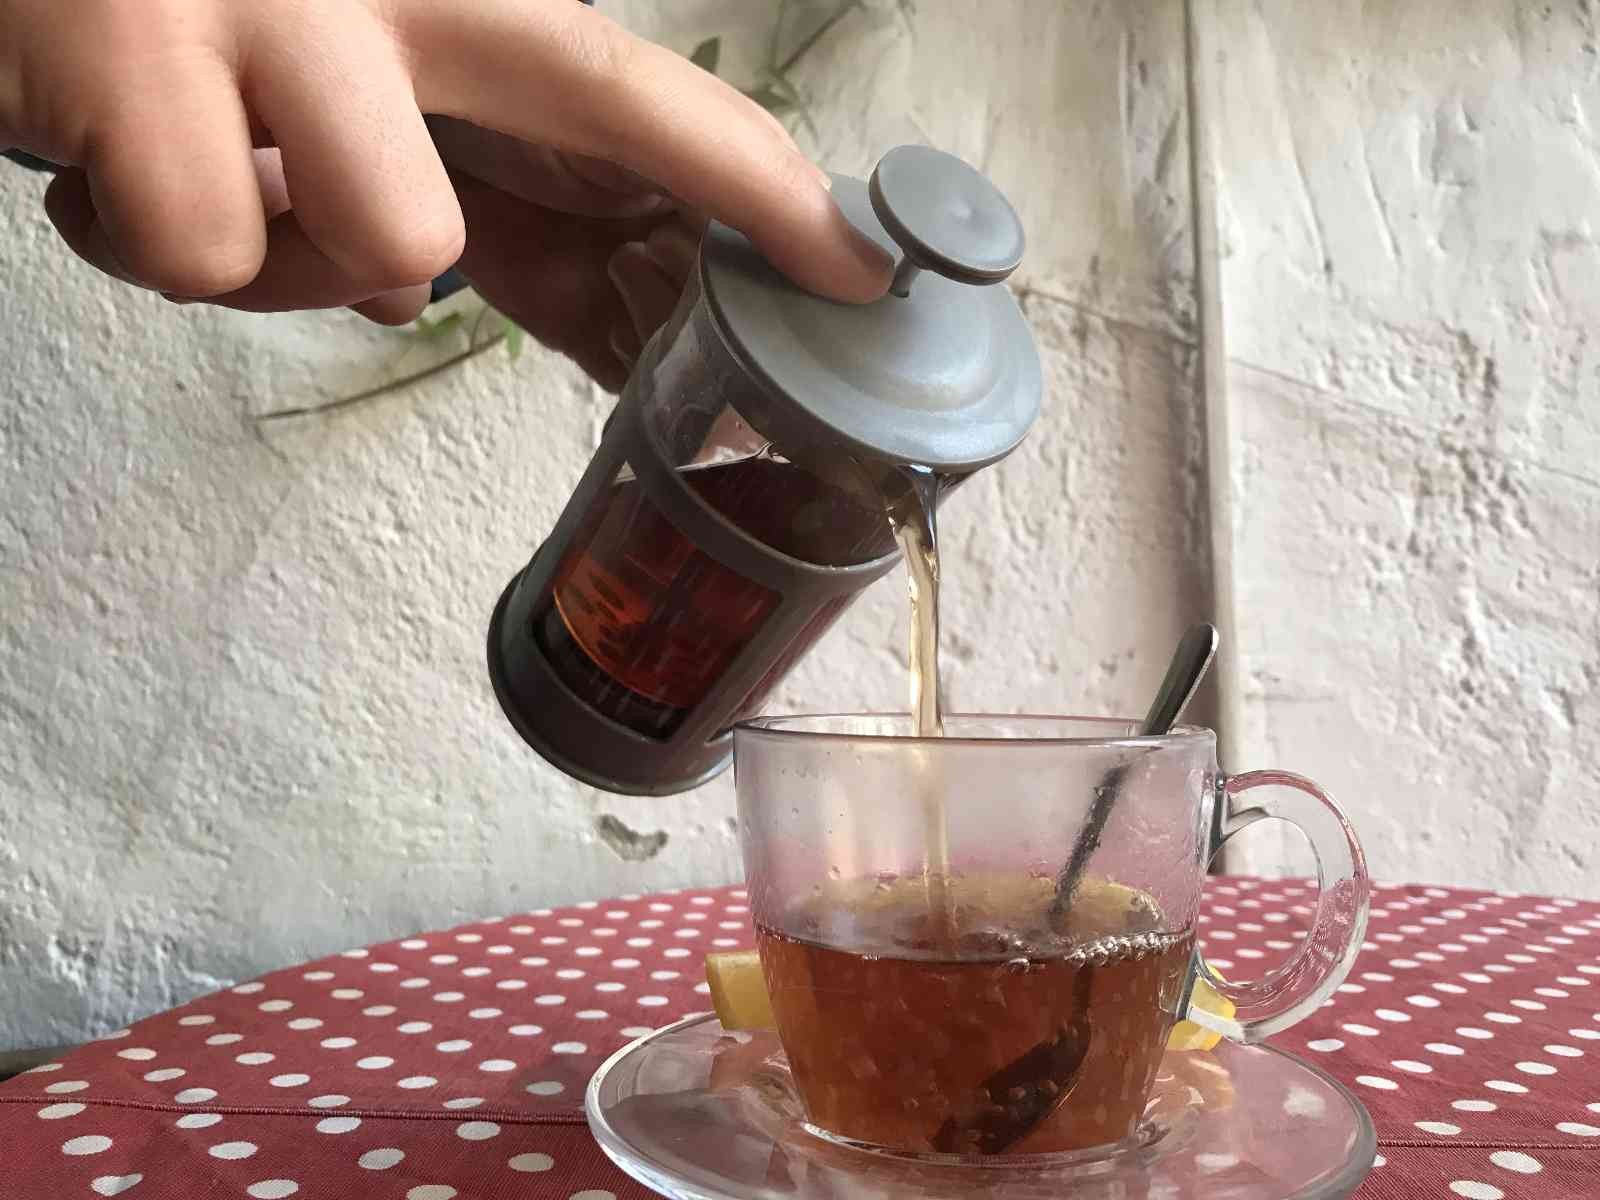 Hastalıklardan korunmak isteyenlerin tercihi kış çayı